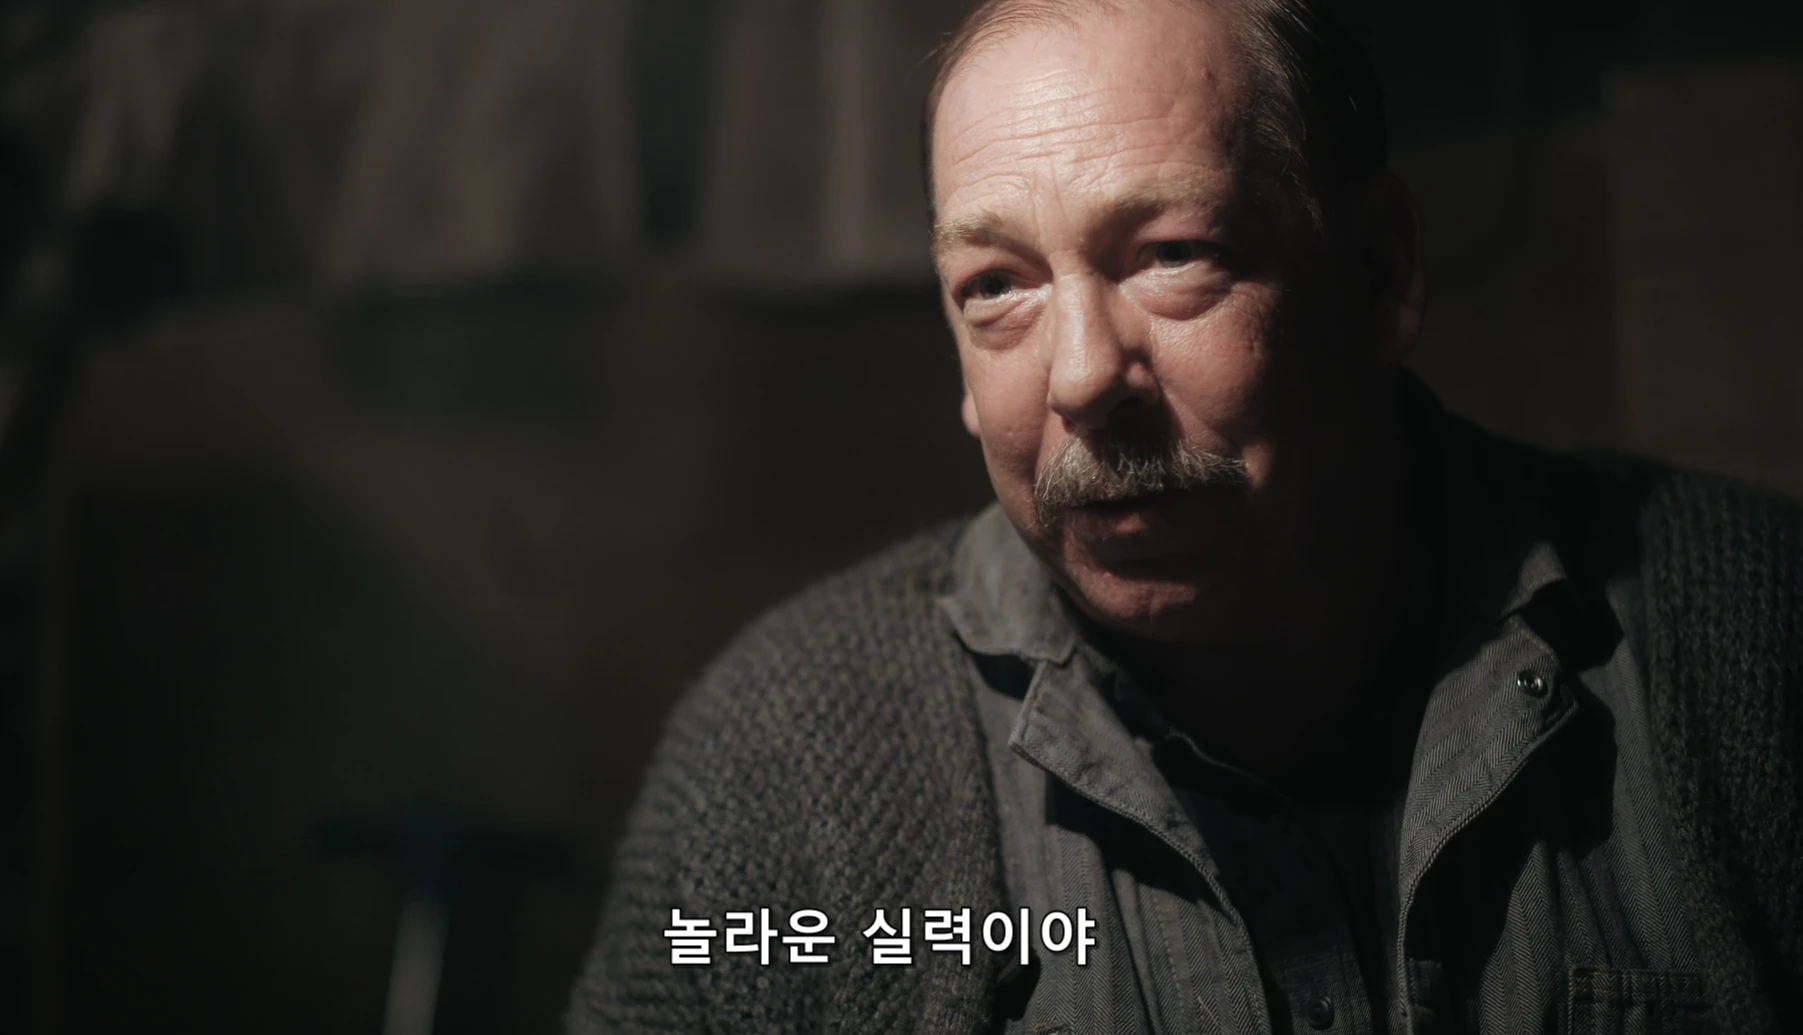 안야 테일러조이 넷플릭스 드라마 퀸스갬빗 1화 리뷰 14